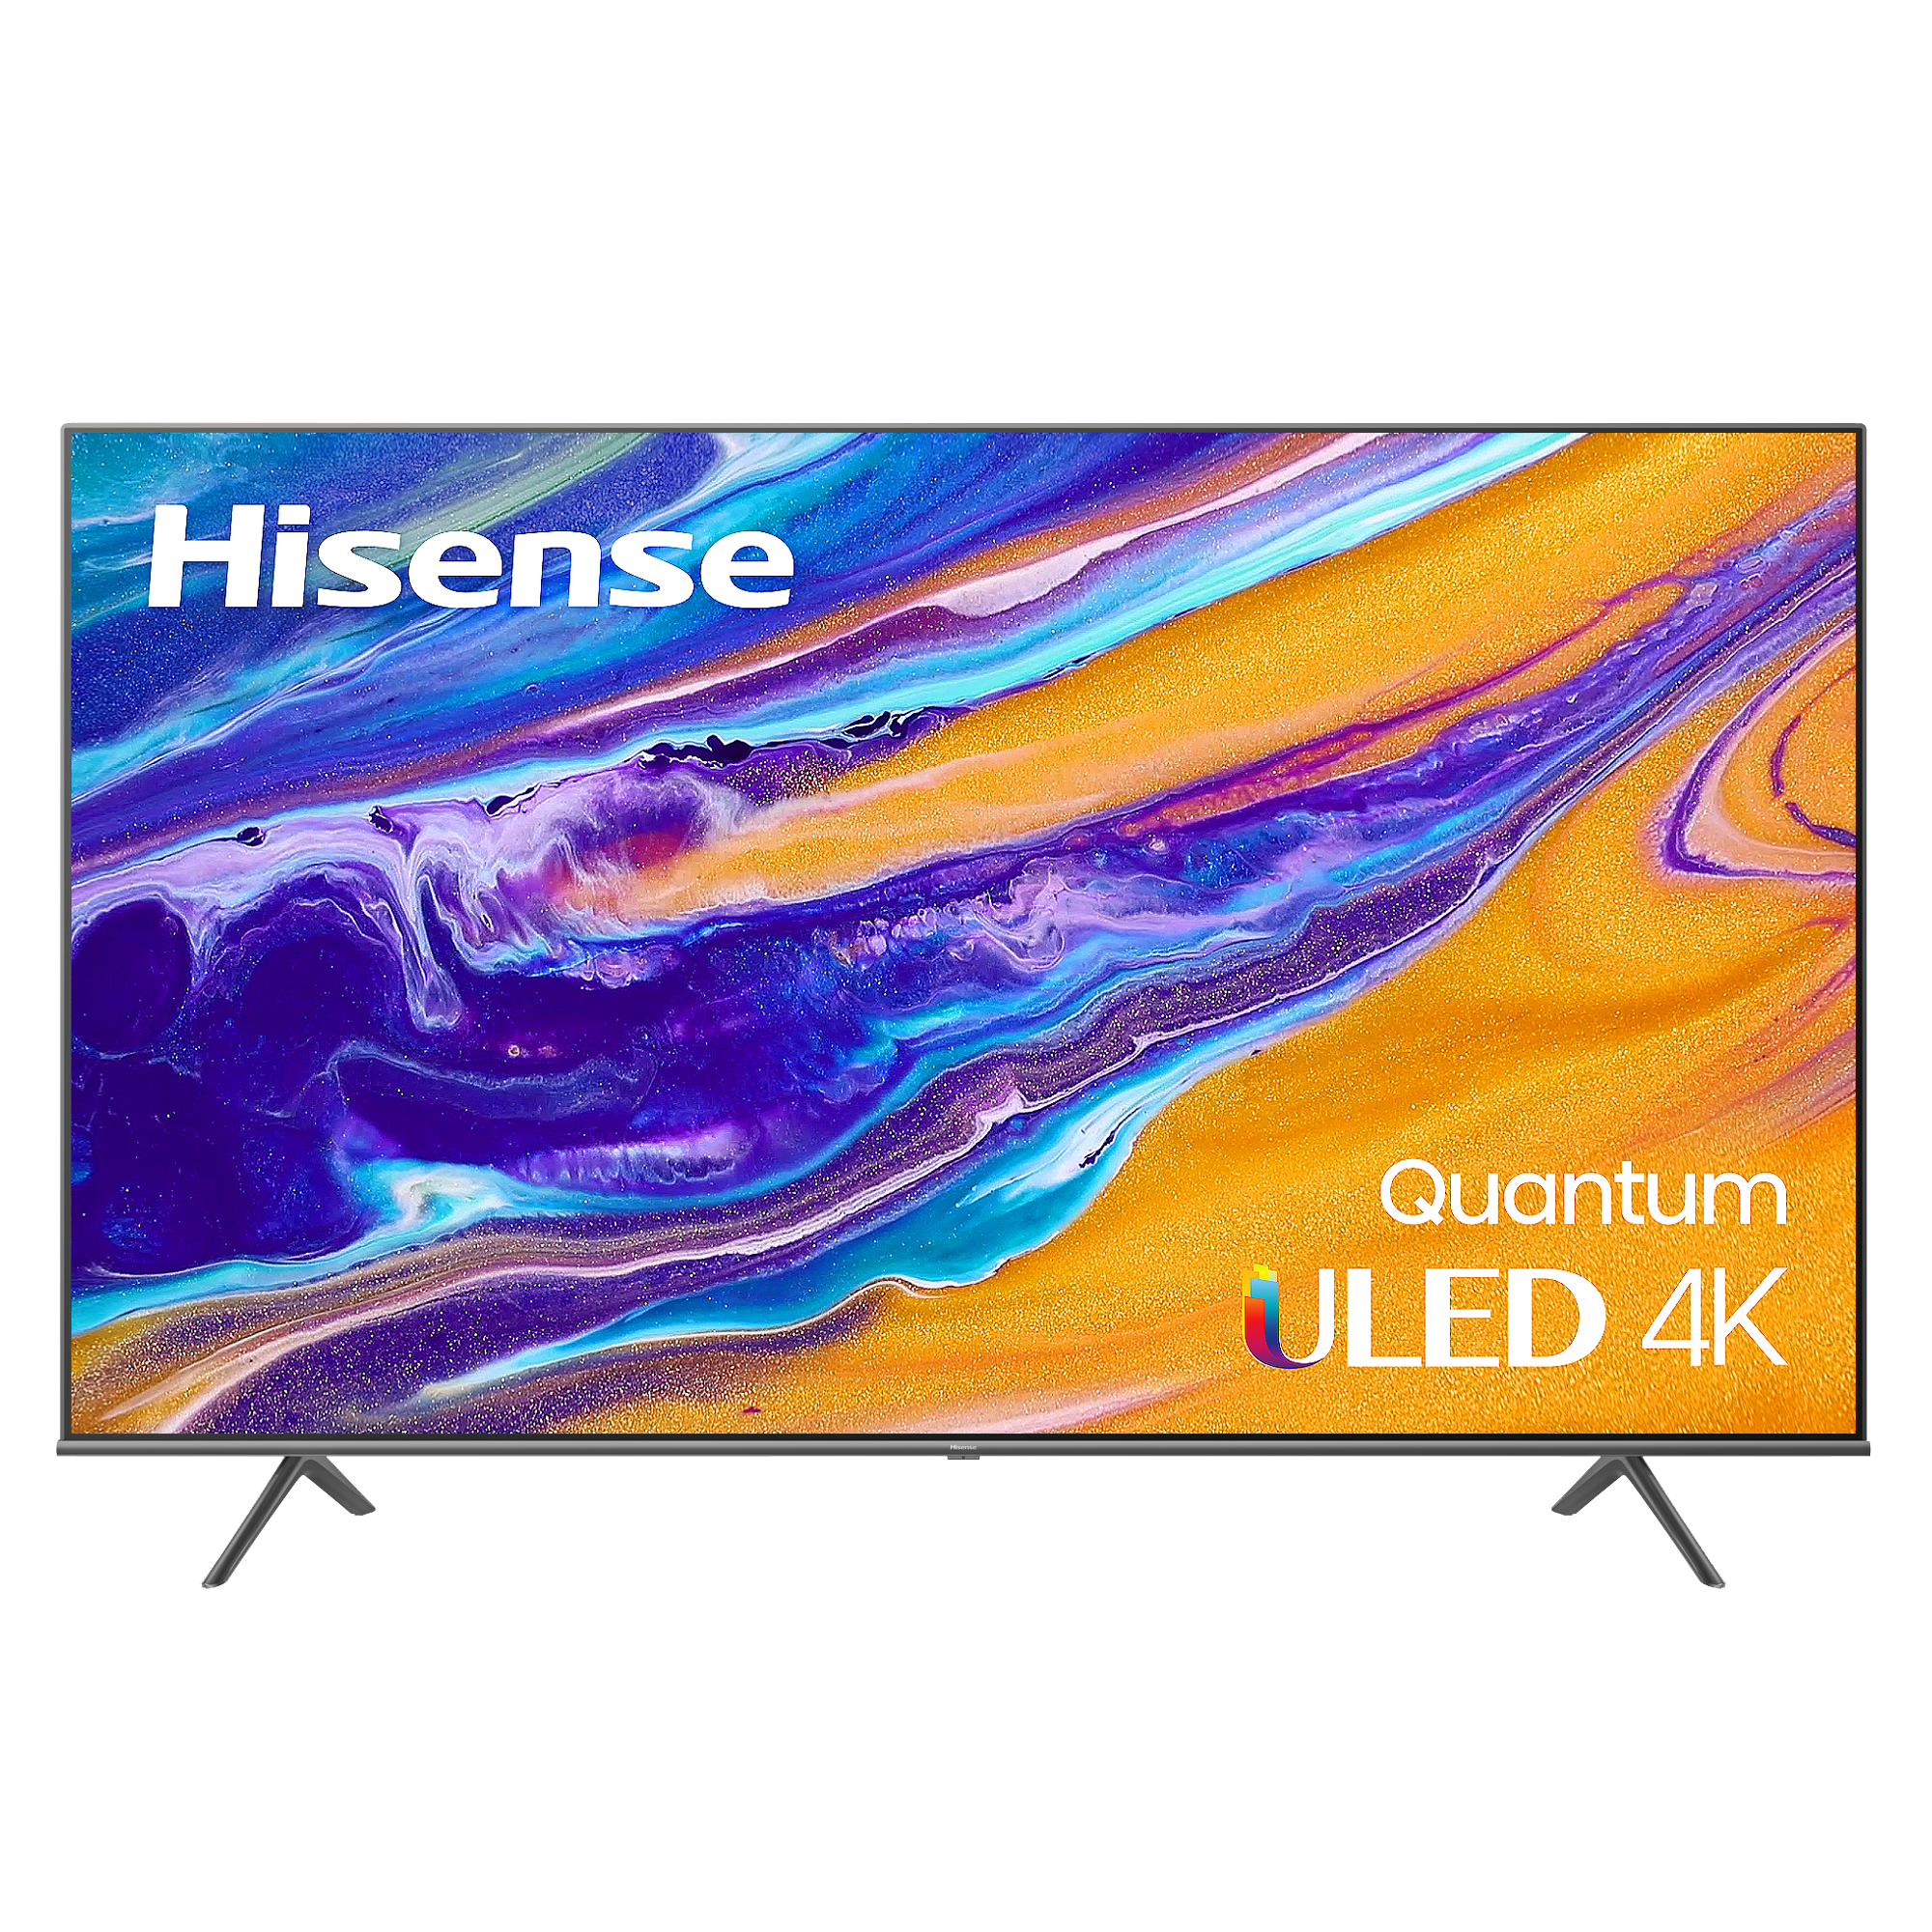 Hisense Premium QLED 75-inch Android TV - 75U6G $798